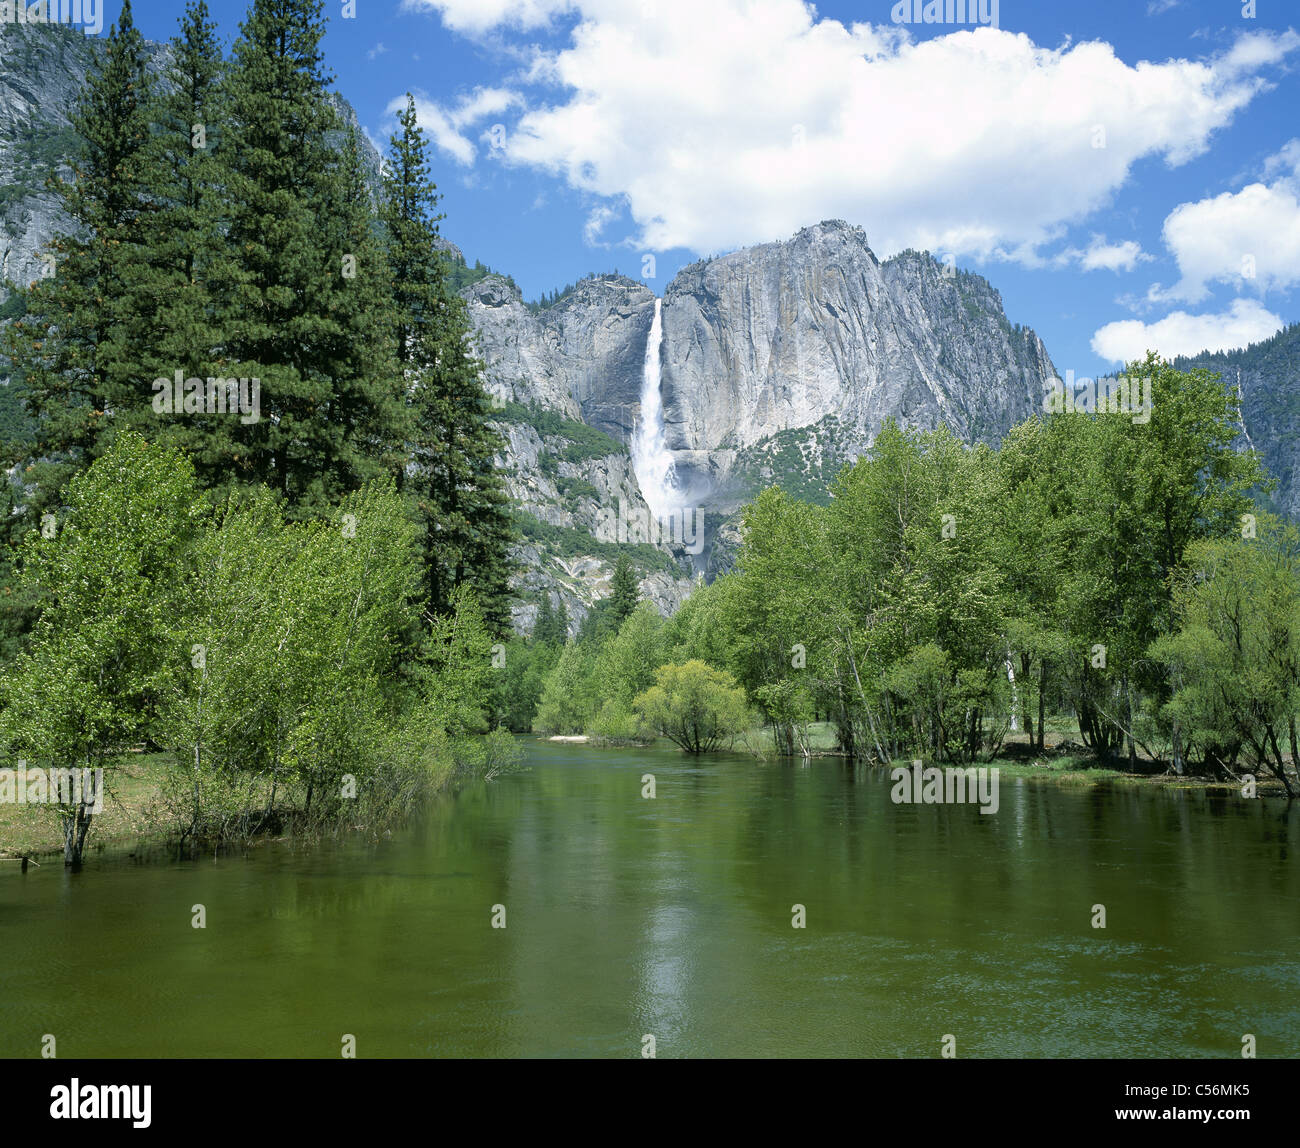 Der Upper Yosemite Fall mit dem Merced River im Vordergrund. Yosemite-Nationalpark, Mariposa County, Kalifornien, USA. Stockfoto